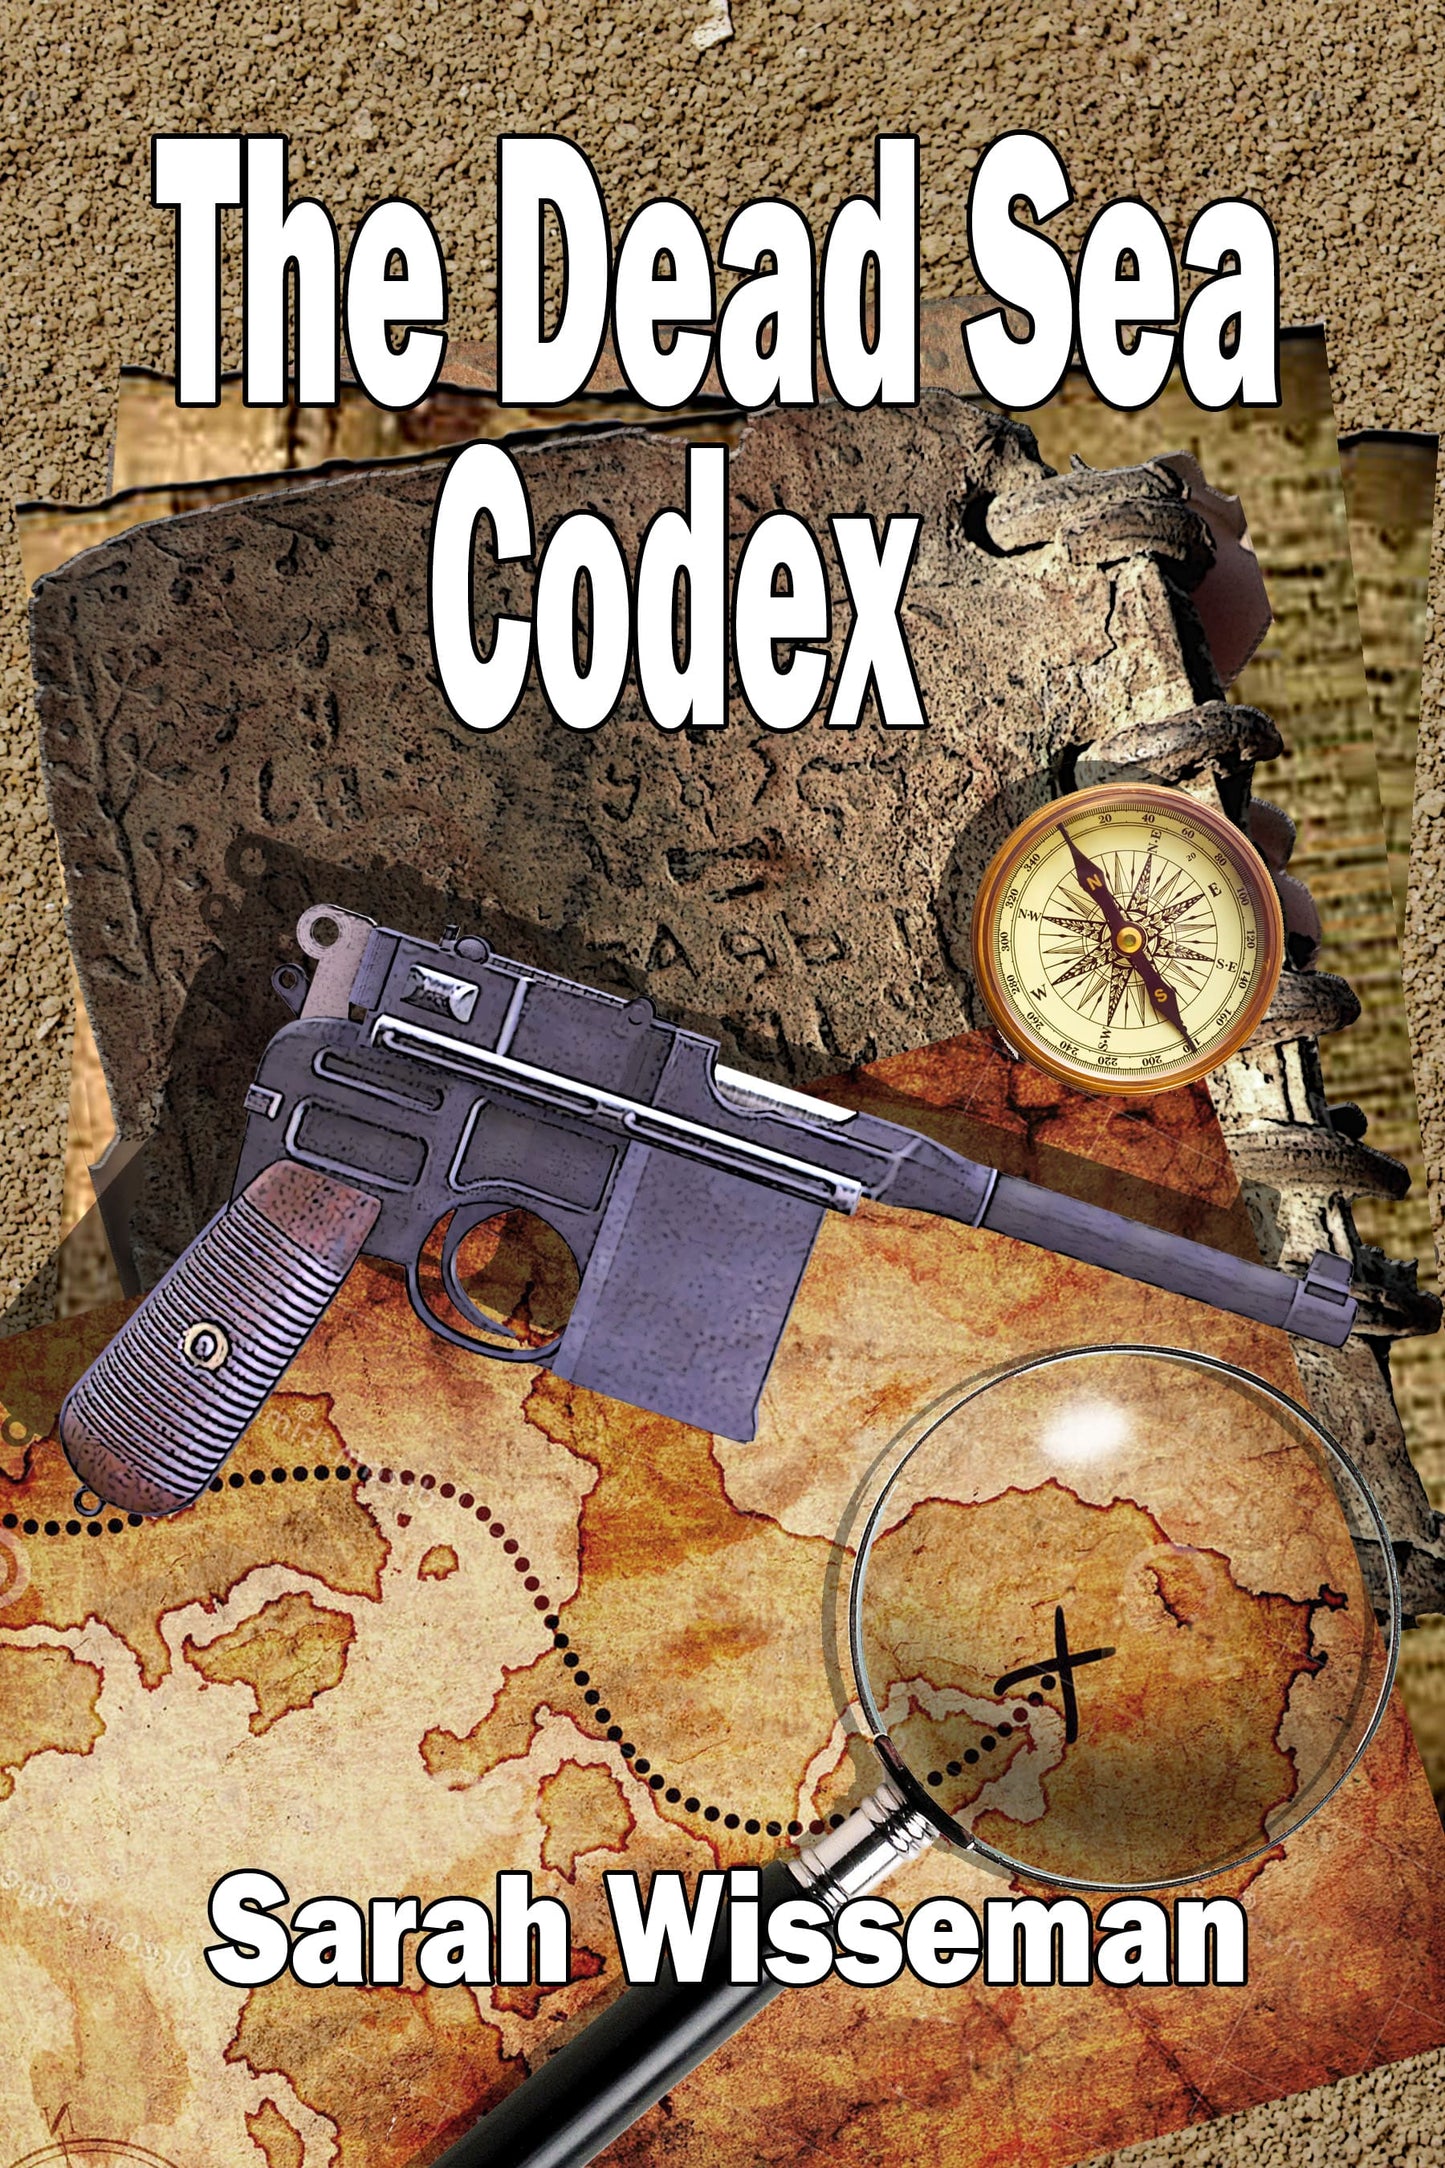 The Dead Sea Codex